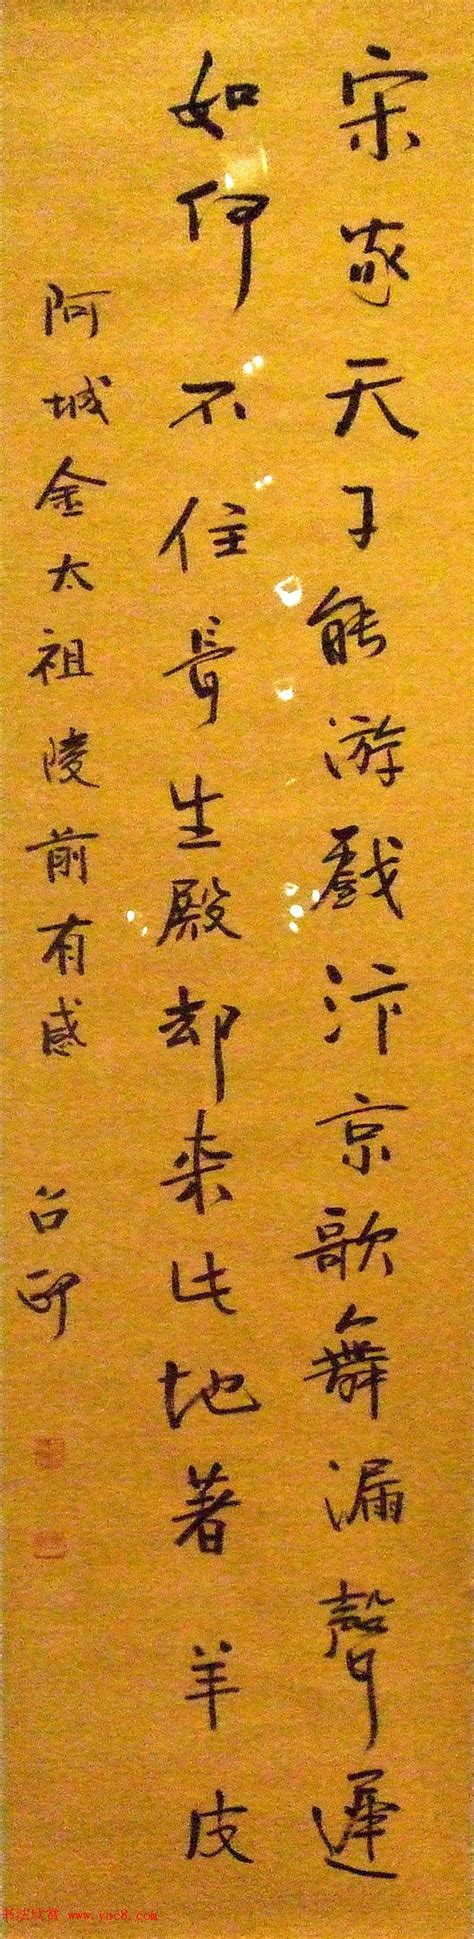 “翰墨中华——熊召政诗文书法学术回顾展”在京开幕